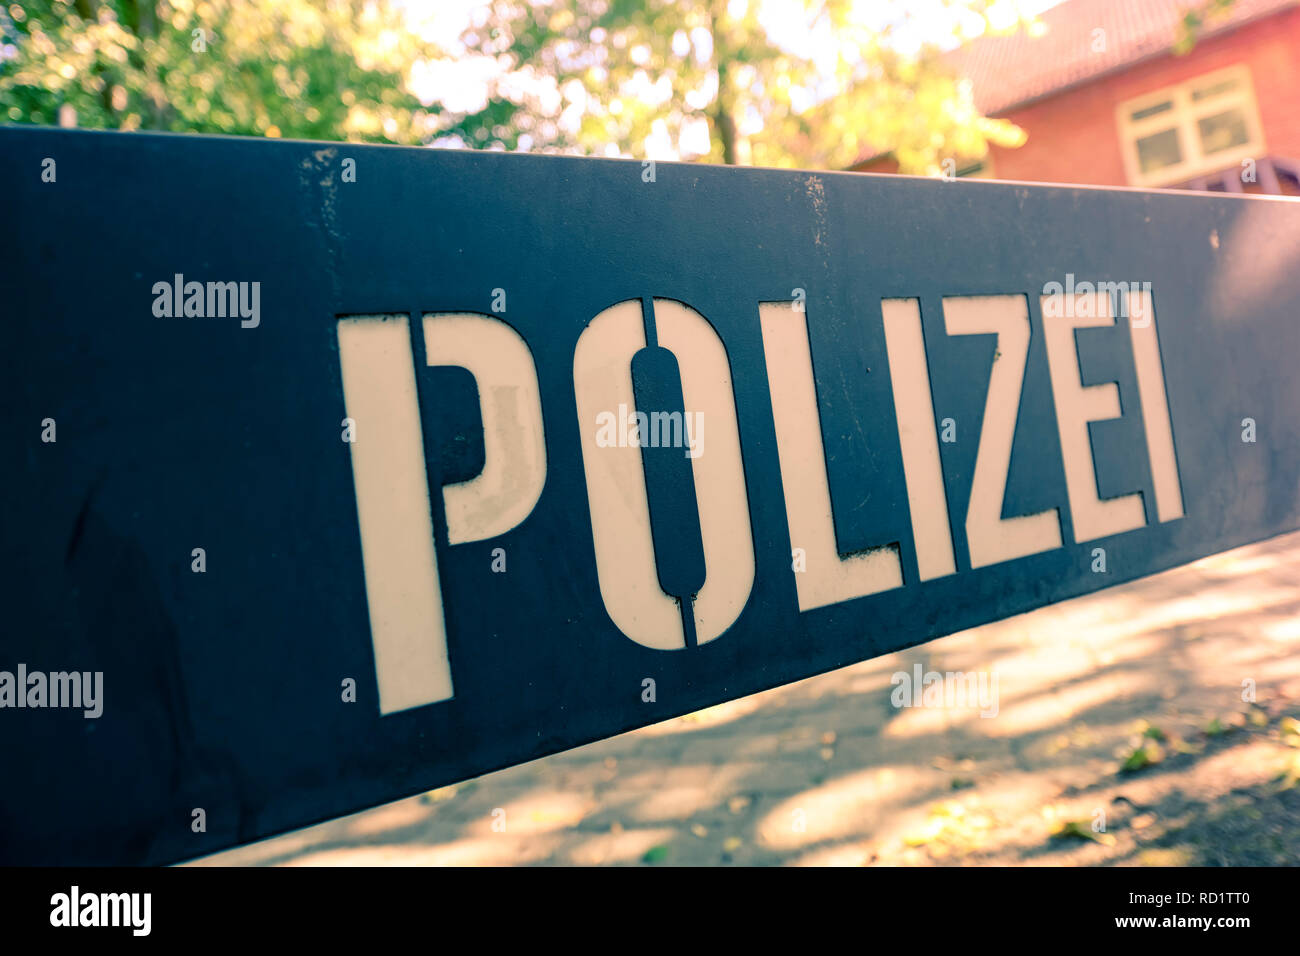 Police sign, Polizeischild Stock Photo